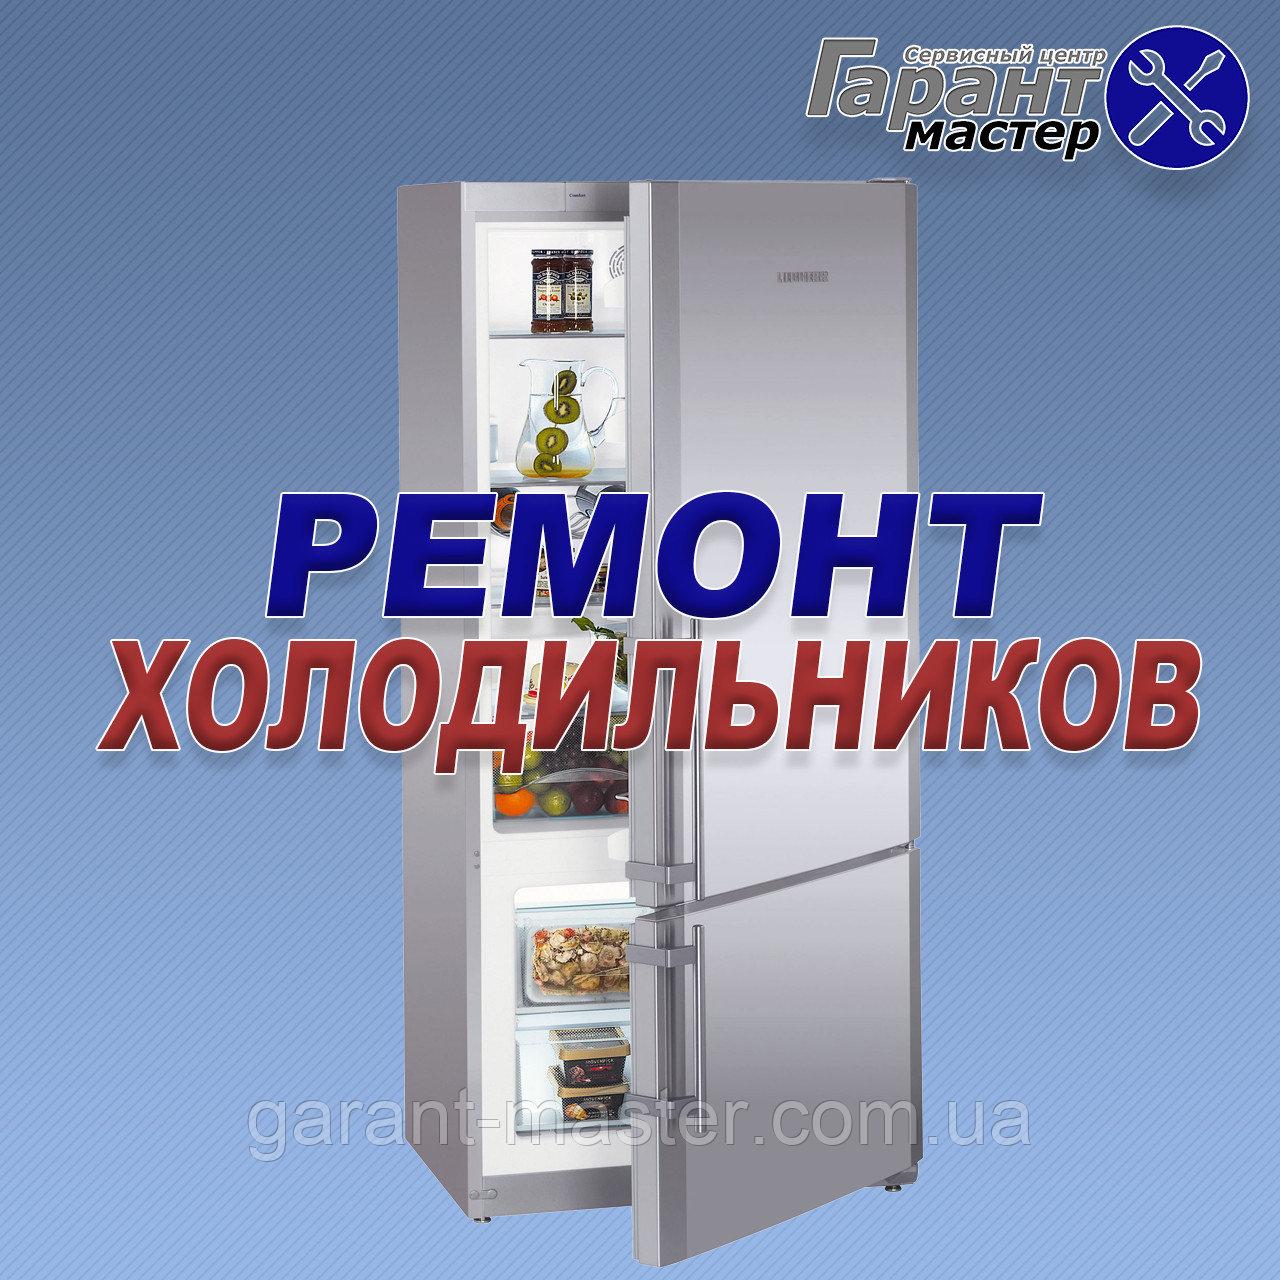 Ремонт холодильників GORENjE в Дніпропетровську